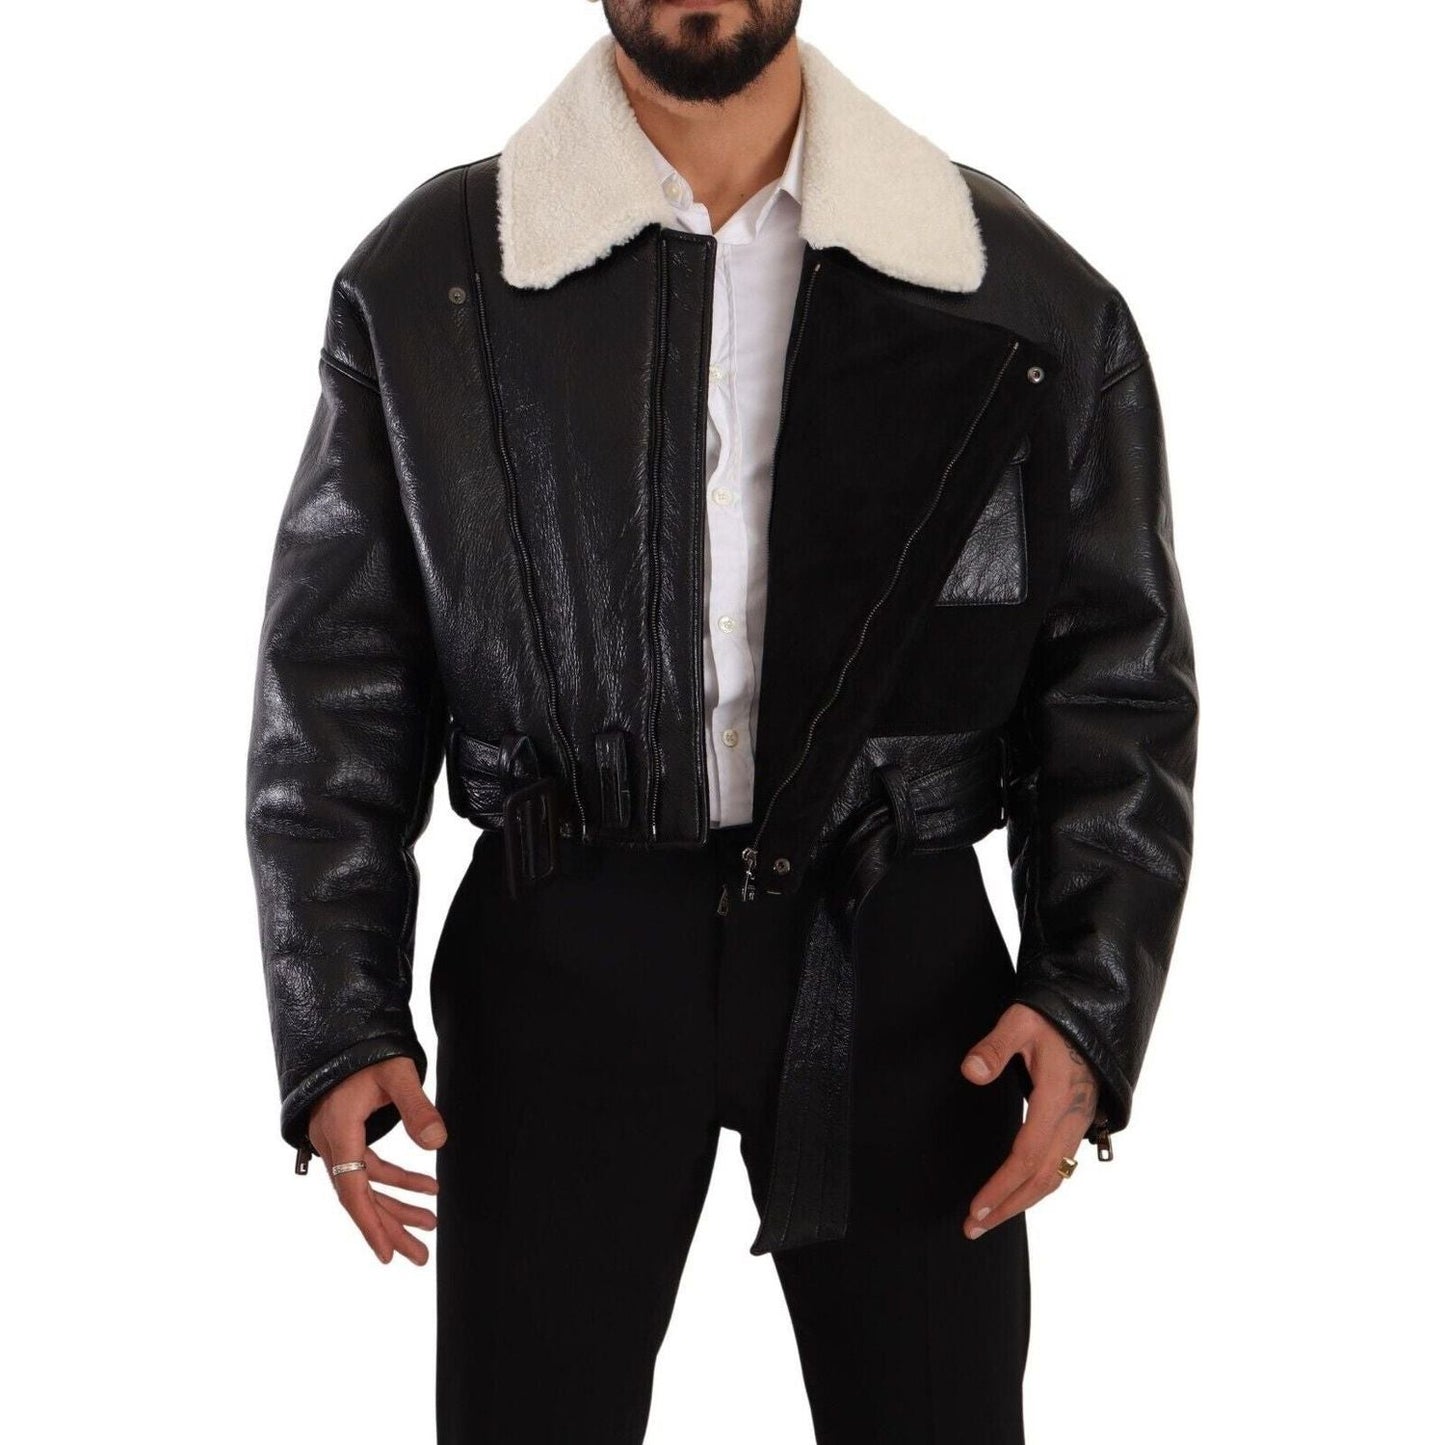 Dolce & Gabbana Elegant Shearling Biker Jacket black-leather-shearling-biker-coat-jacket